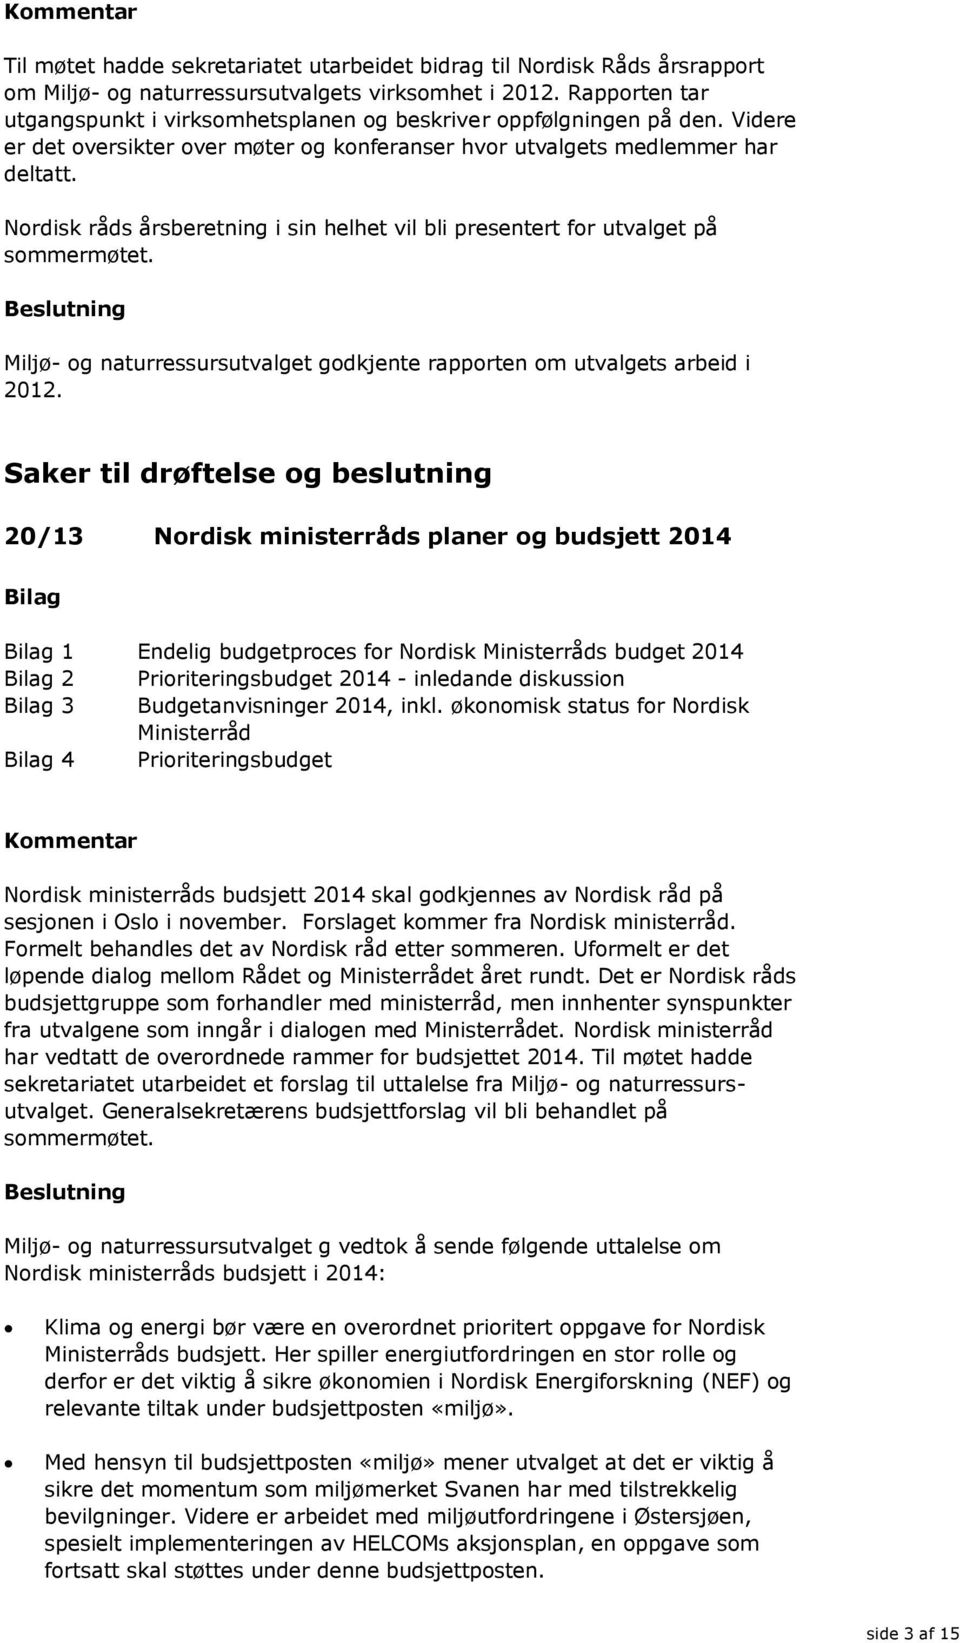 Nordisk råds årsberetning i sin helhet vil bli presentert for utvalget på sommermøtet. Miljø- og naturressursutvalget godkjente rapporten om utvalgets arbeid i 2012.